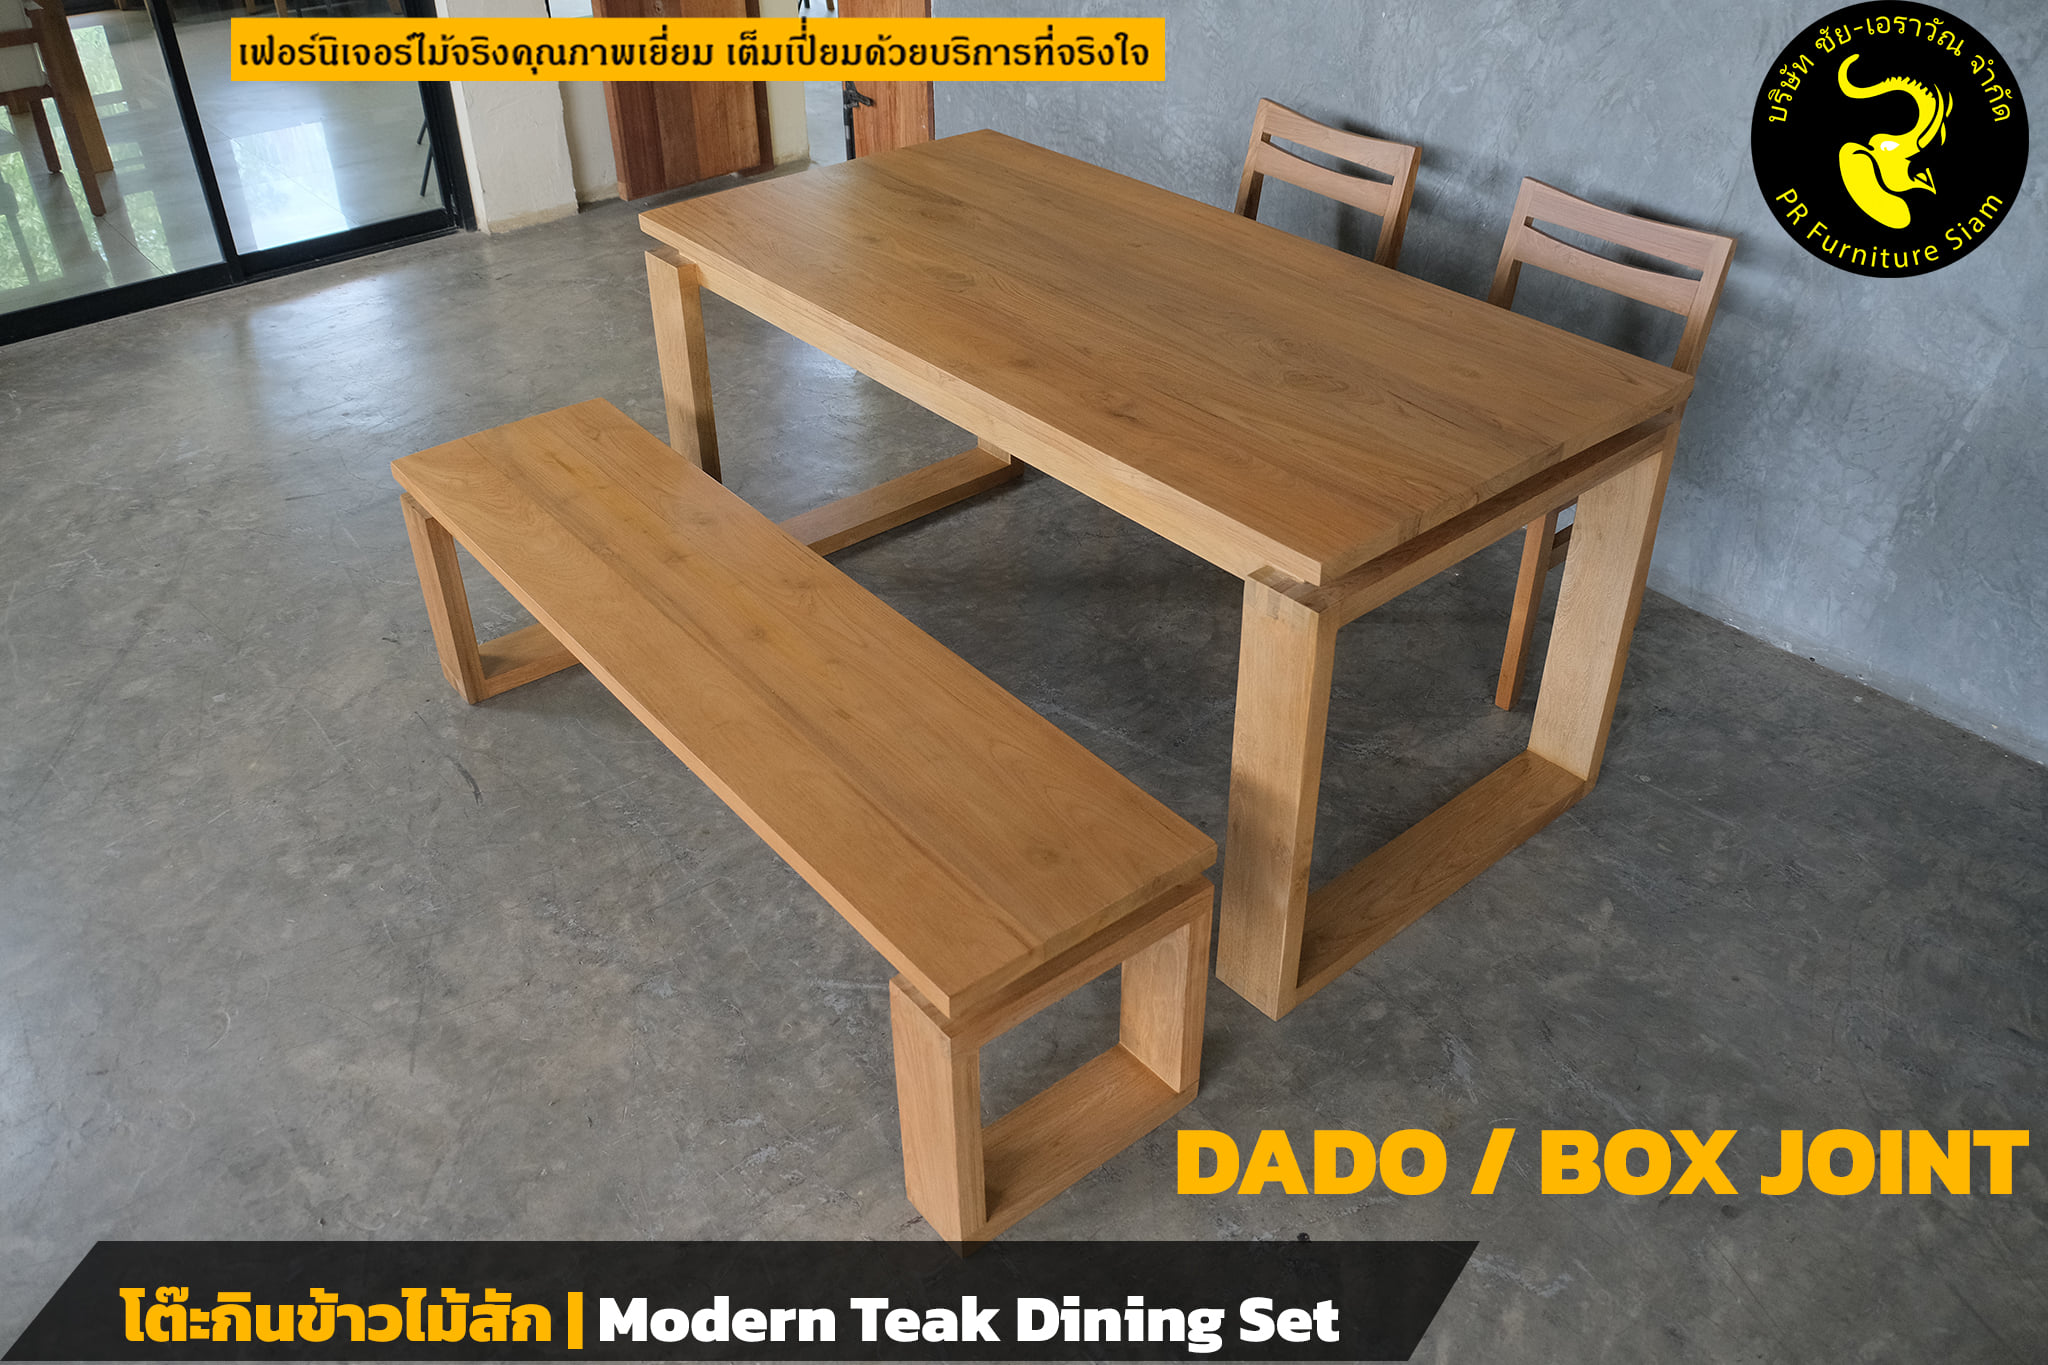 ชุดโต๊ะกินข้าวไม้สัก DADO/BOX JOINT